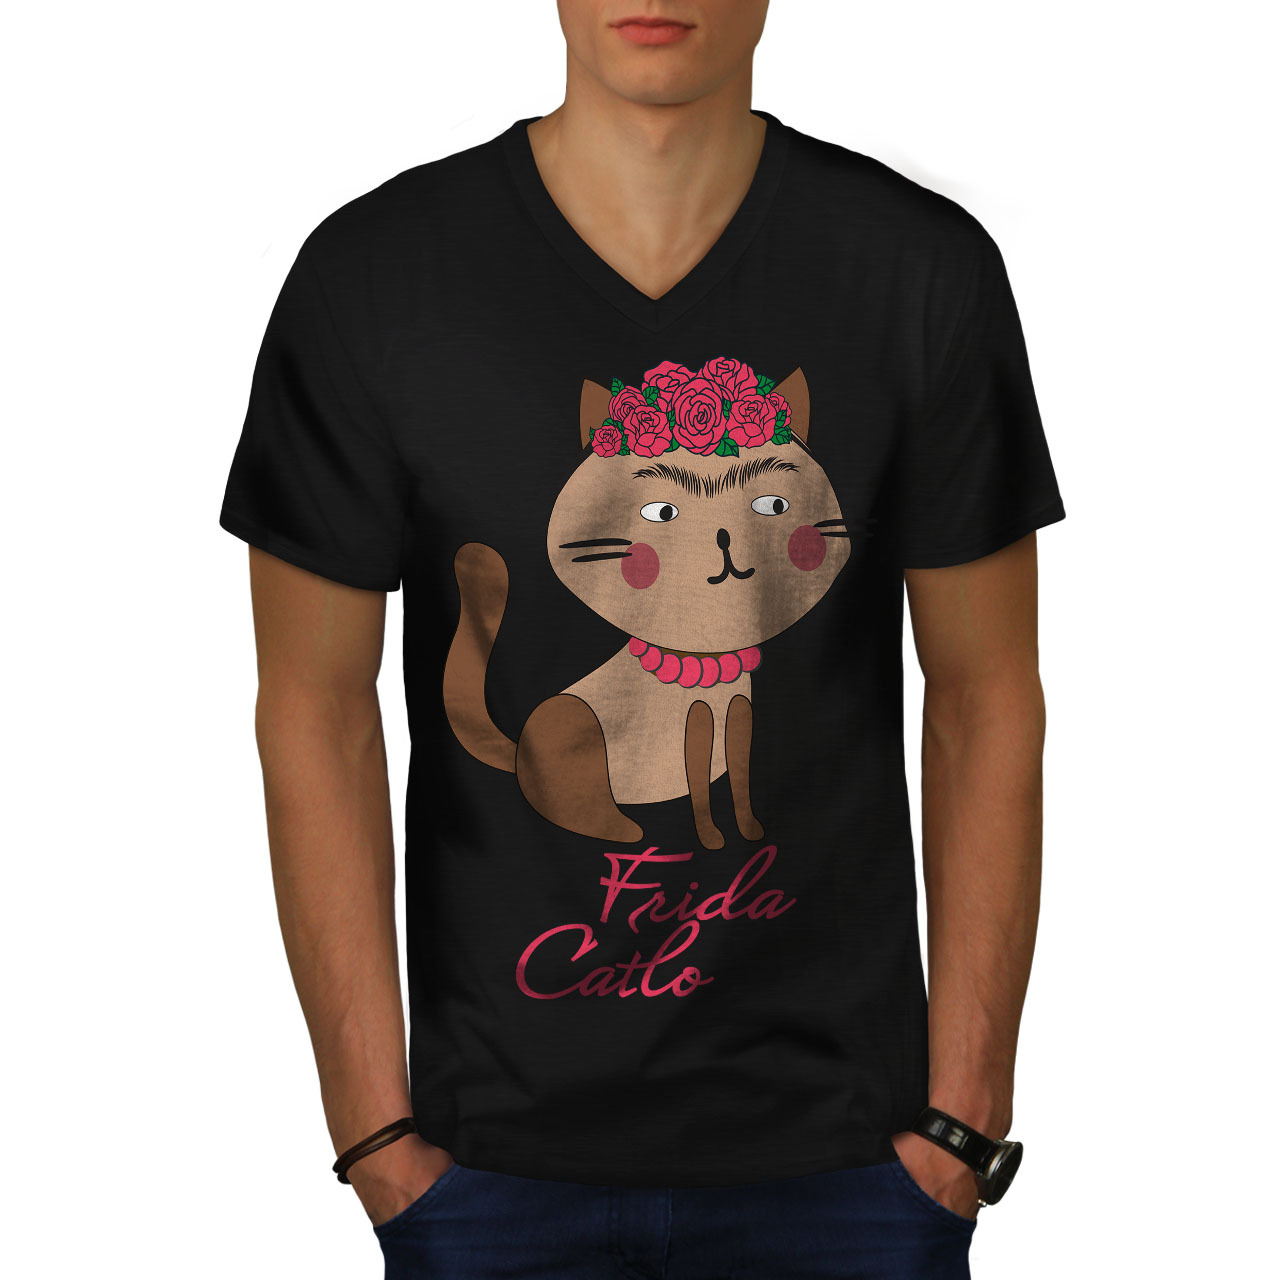 Primary image for Frida Kahlo Cat Shirt Funny Men V-Neck T-shirt